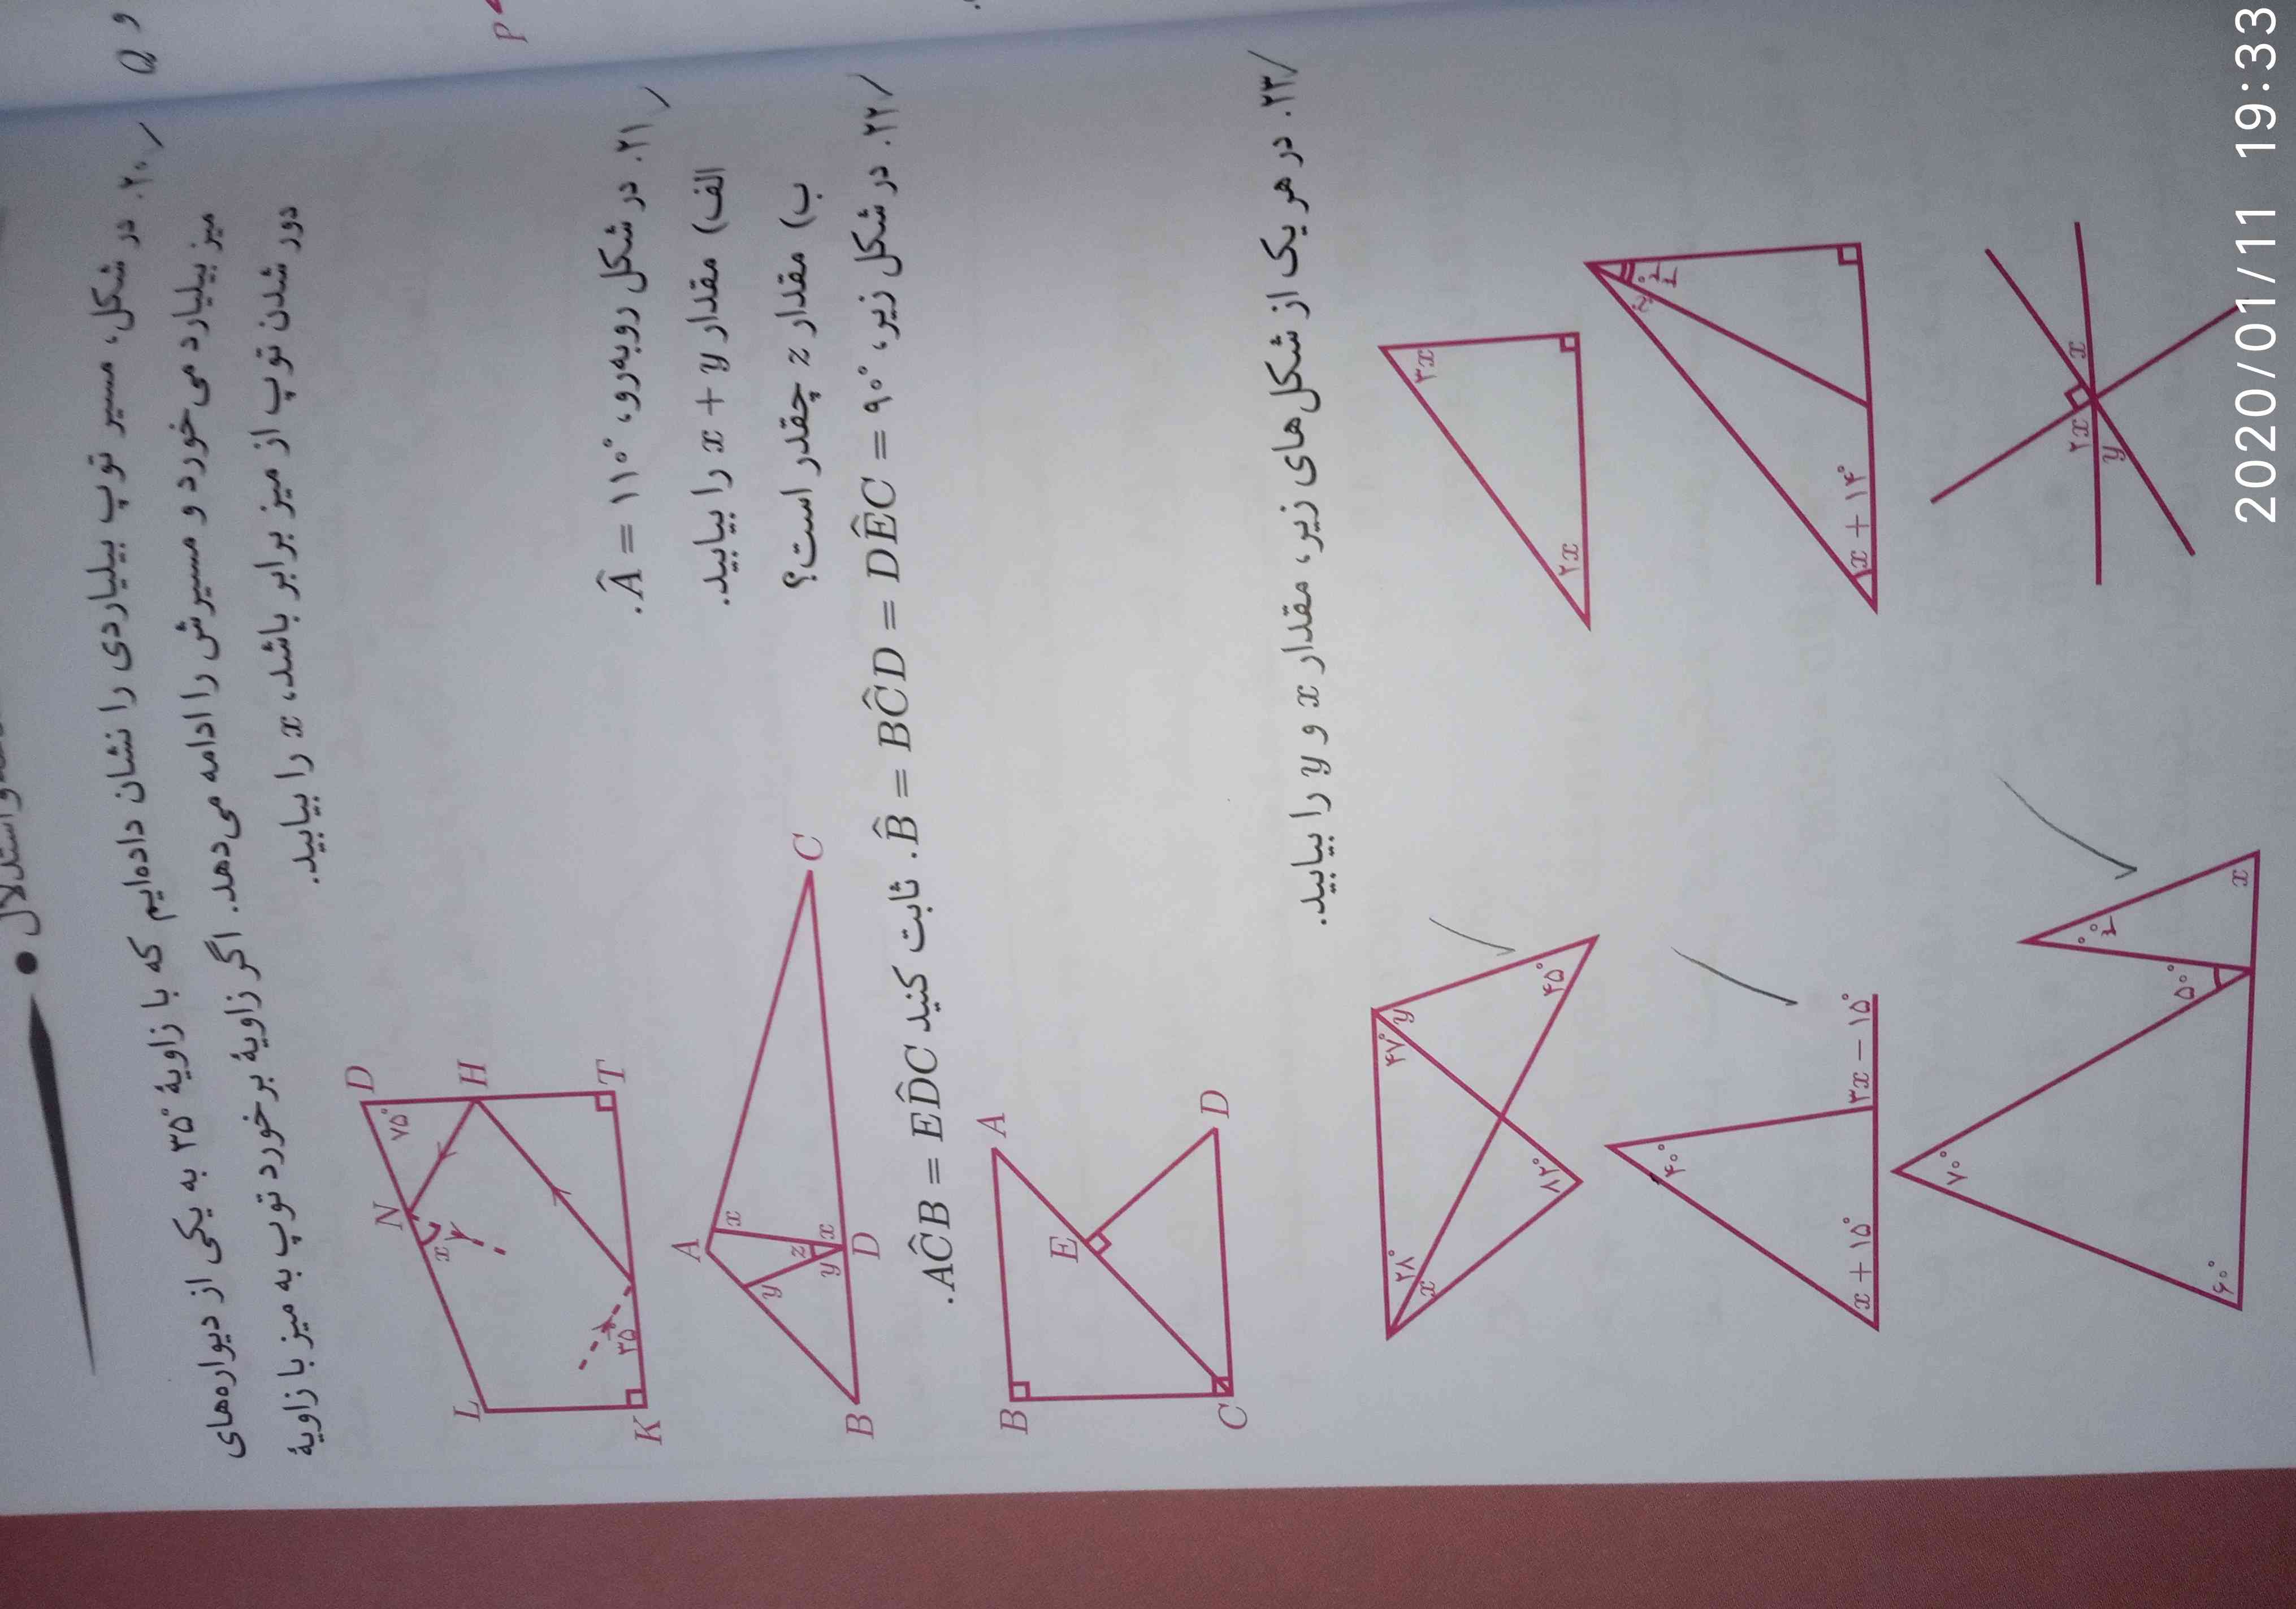 هرکس تیزهوشان میره جواب بده صفحه ۵۷ مکمل ریاضی.
بقیه هم جواب بدین لطفاً
عجله دارم
